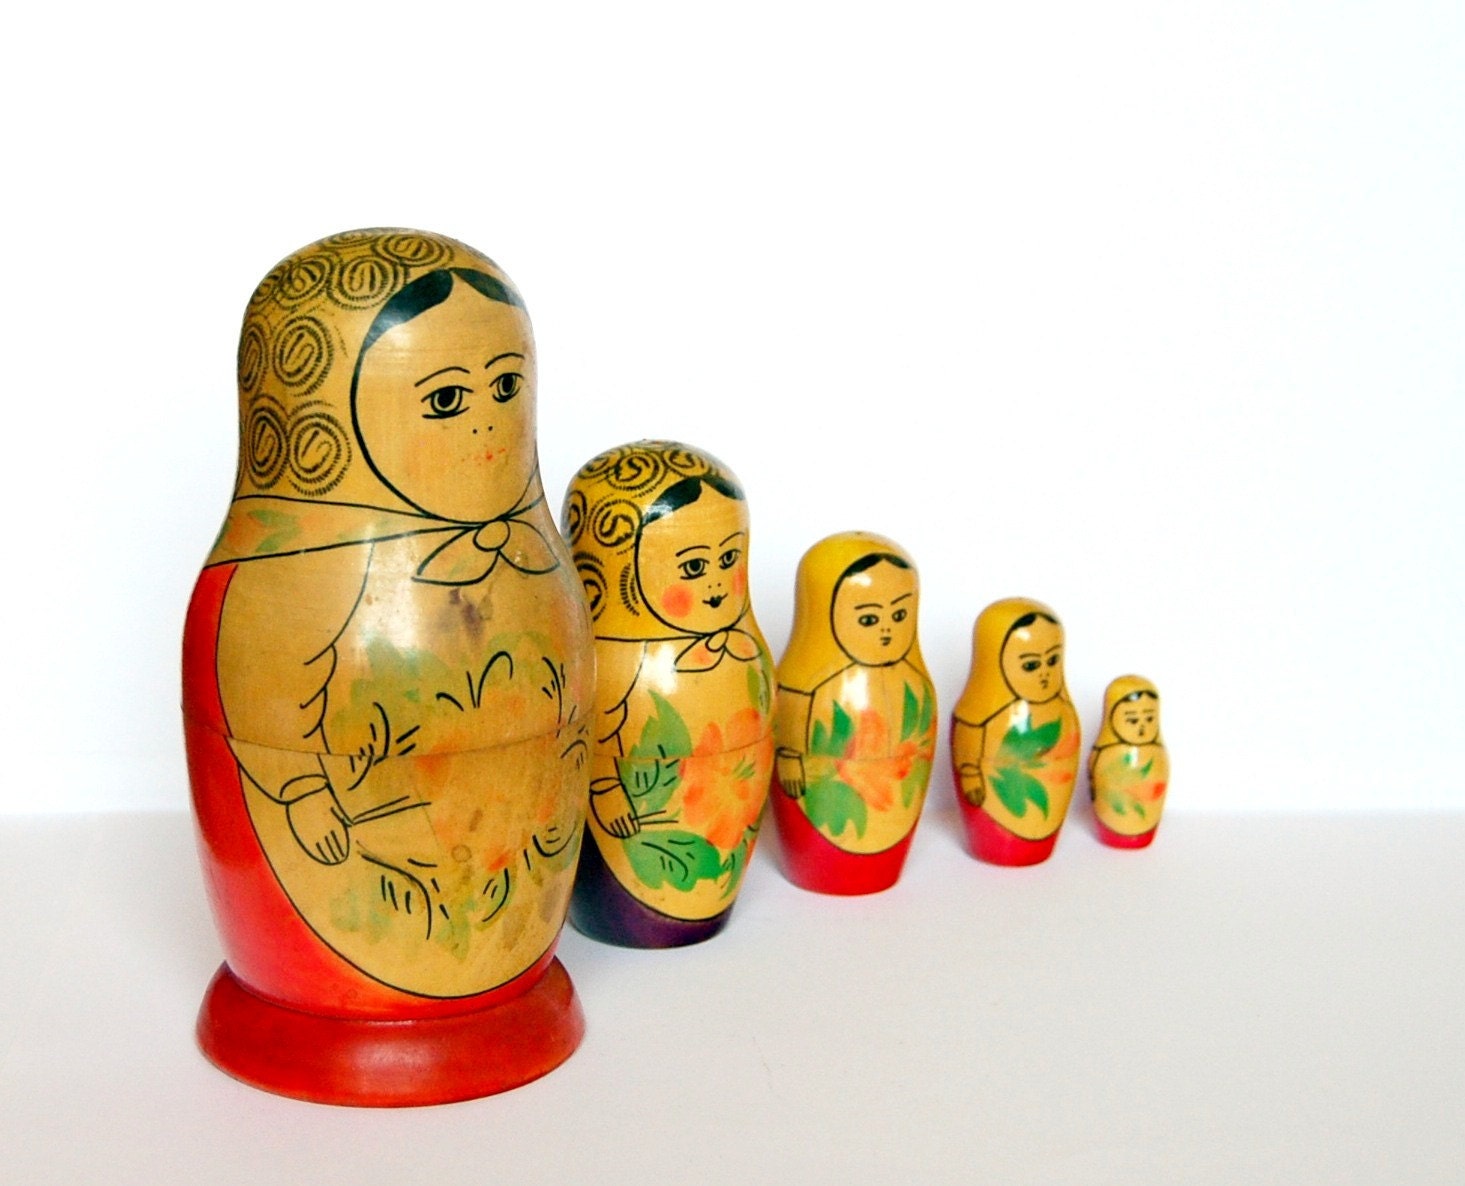 Vintage nesting dolls matryoshka from Soviet Union